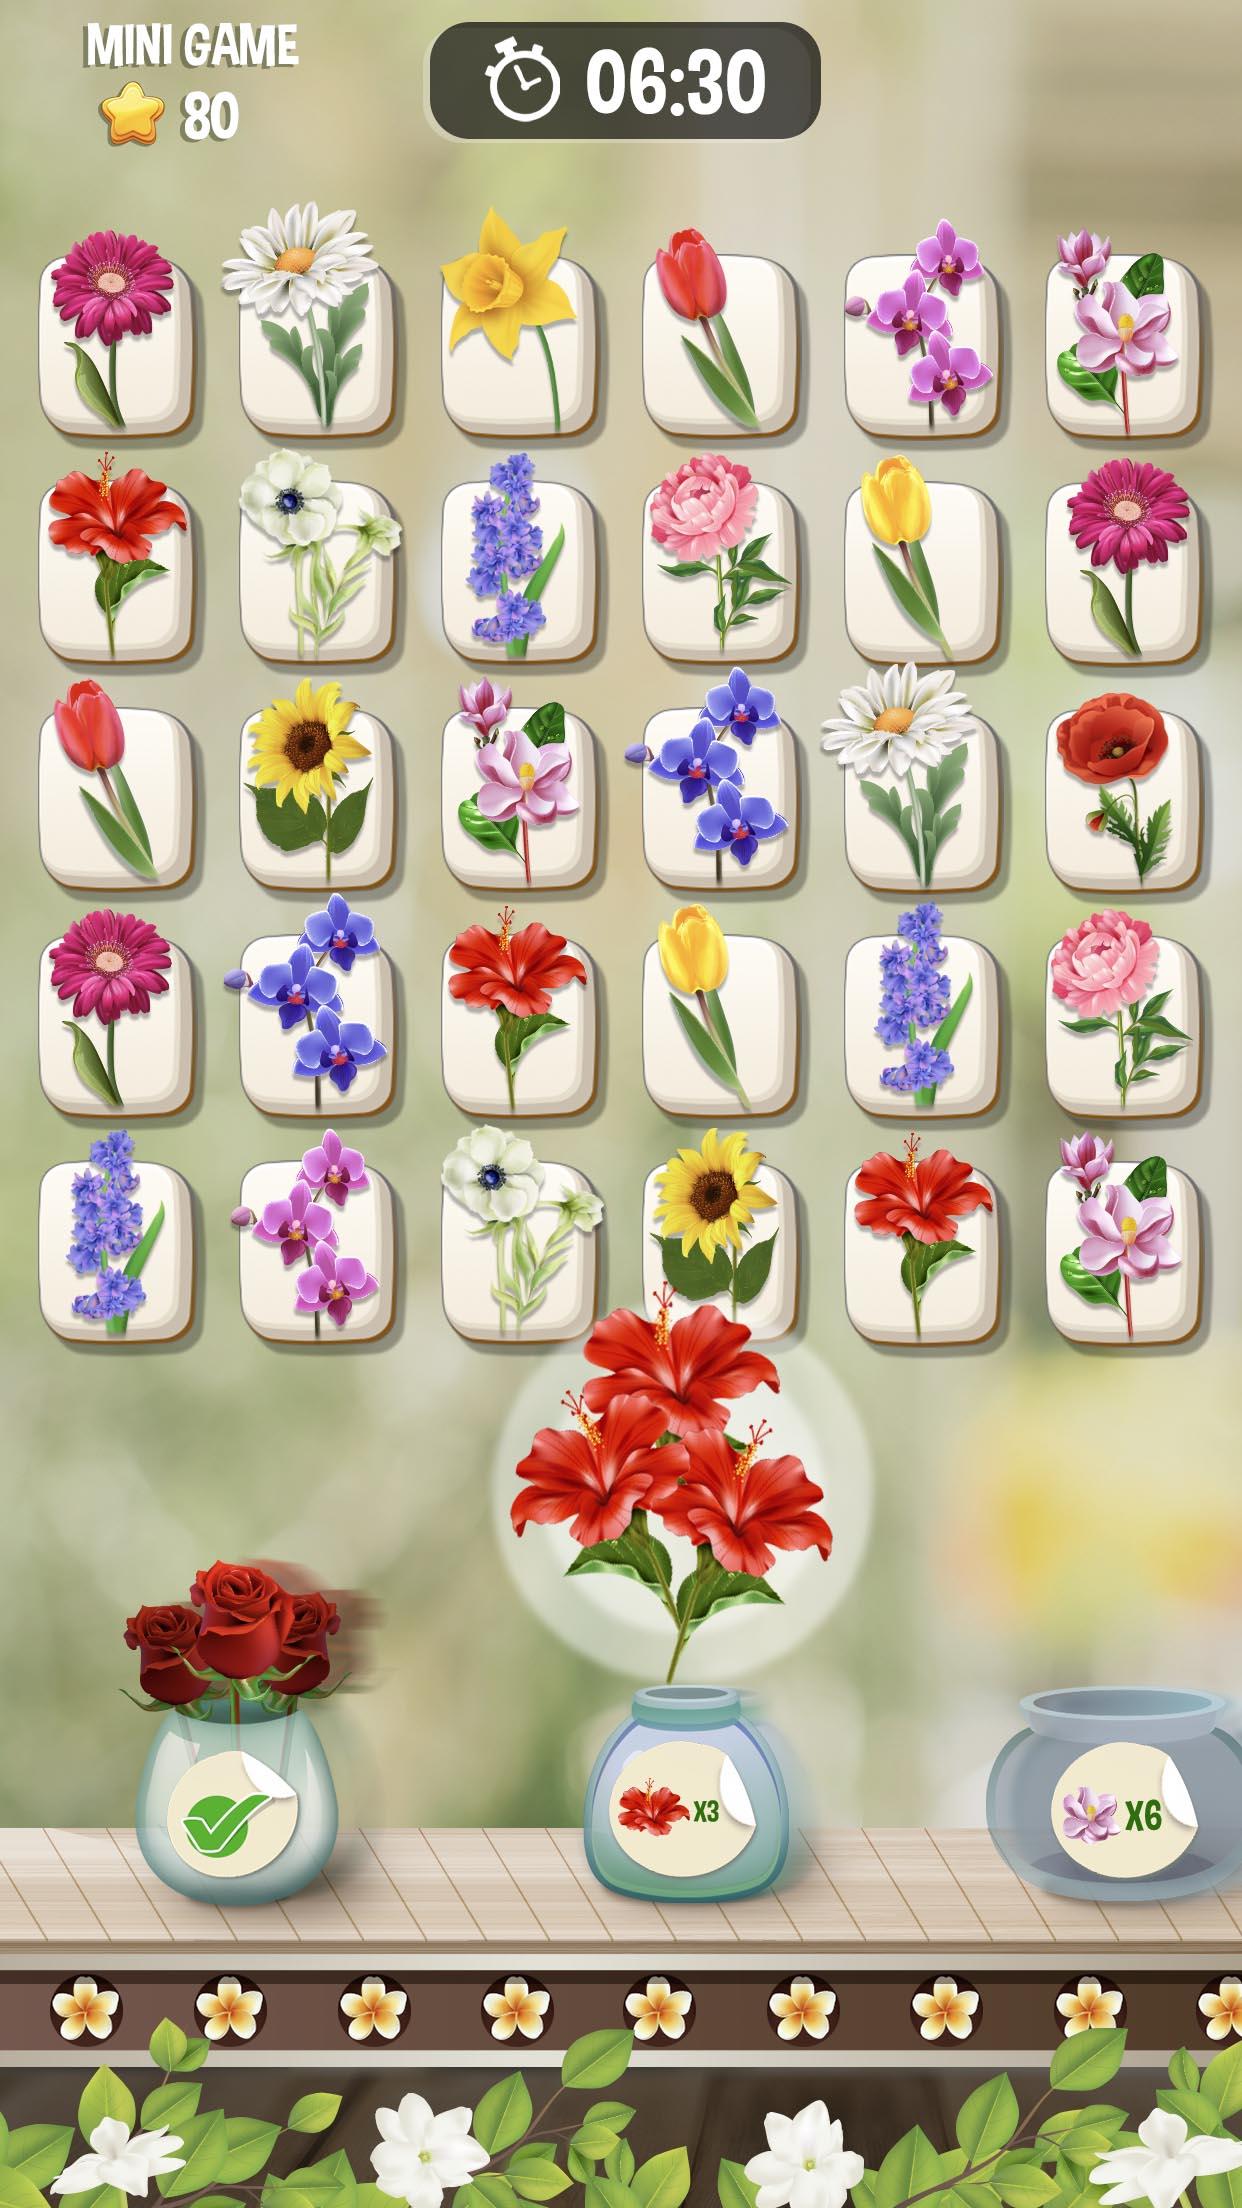 Screenshot 1 of Zen Blossom: การจับคู่กระเบื้องดอกไม้ 1.6.10